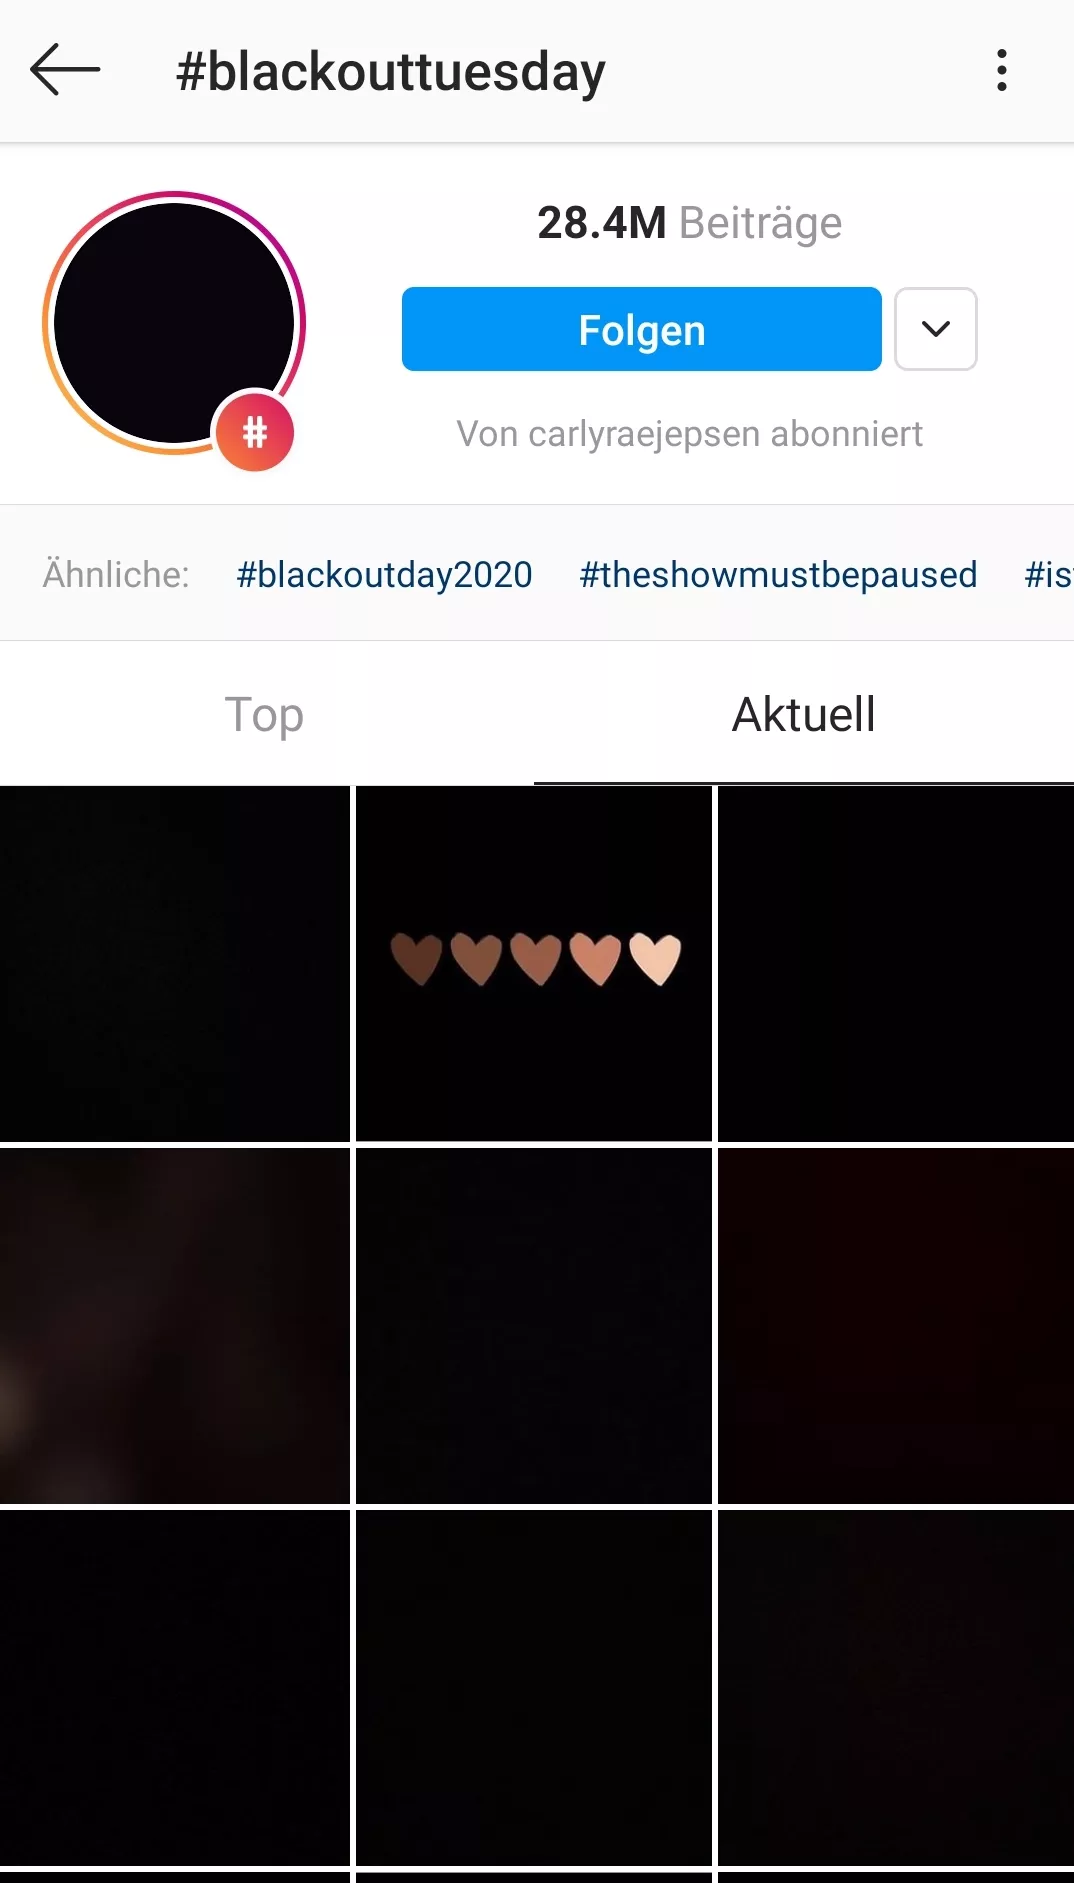 Beiträge auf Instagram zum Hashtag #blackouttuesday als Zeichen gegen Rassismus